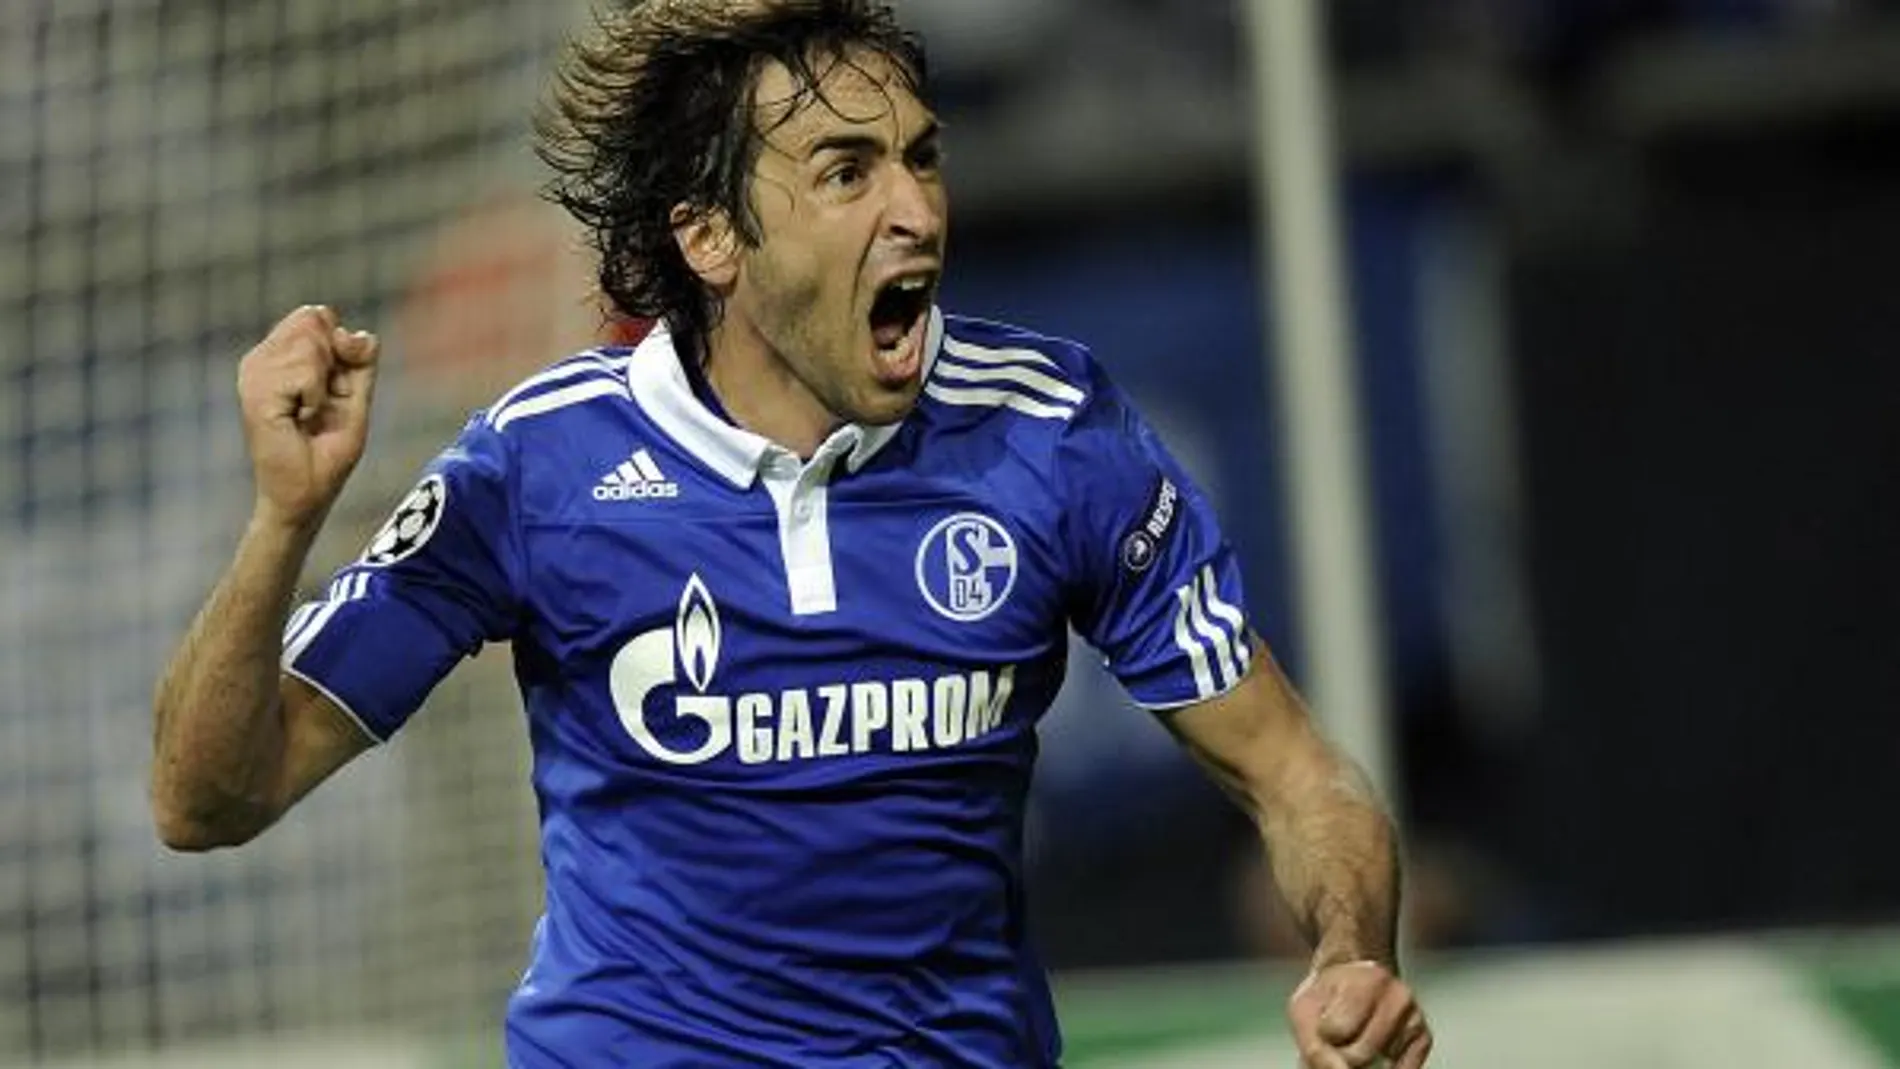 Raúl tumba al campeón y mete a Schalke en semifinales (2-1)